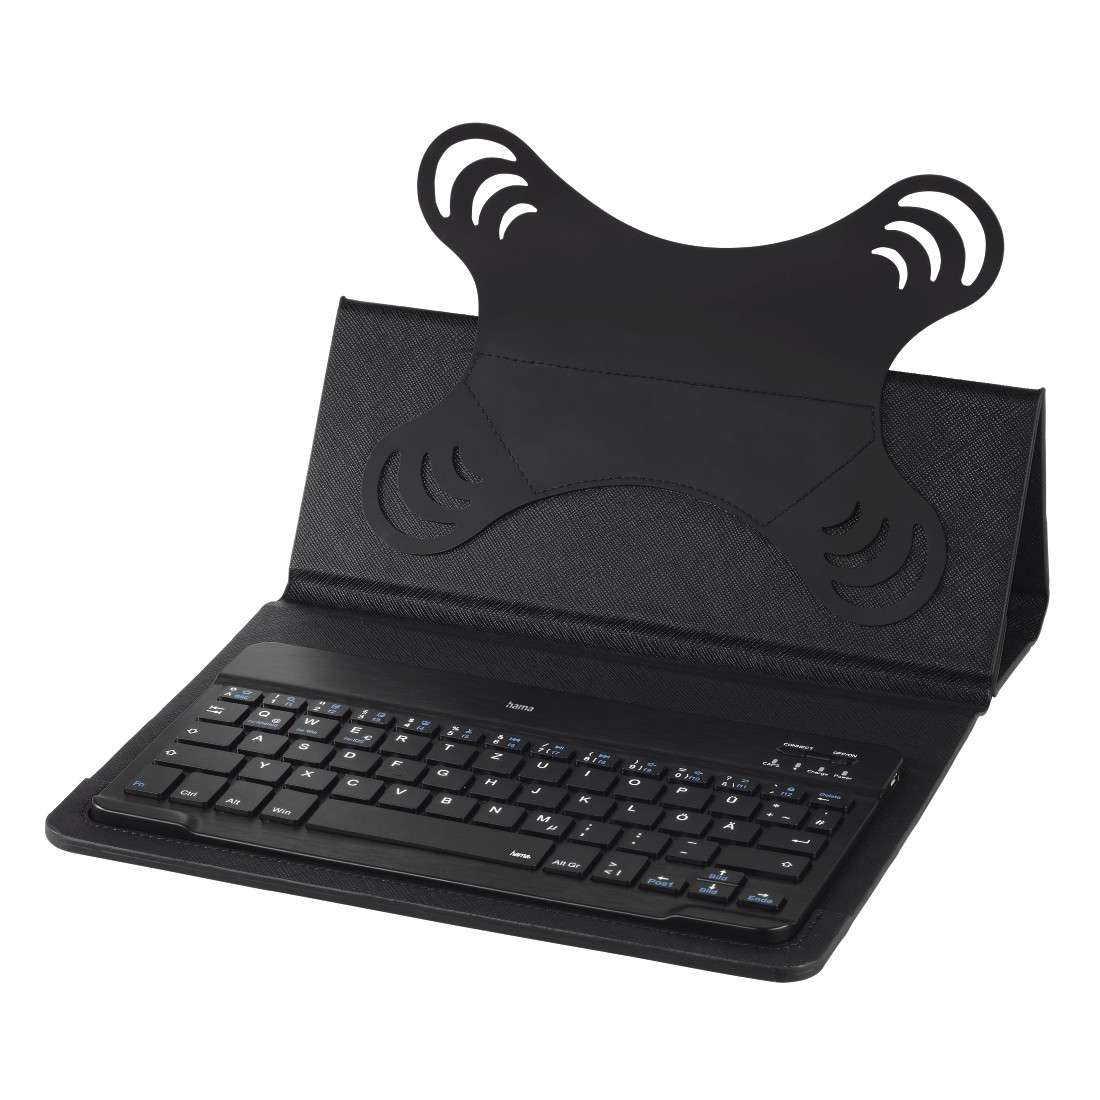 HAMA Bluetooth®-Tastatur mit Tablet-Tasche KEY4ALL X3100, Schwarz, QWERTZ